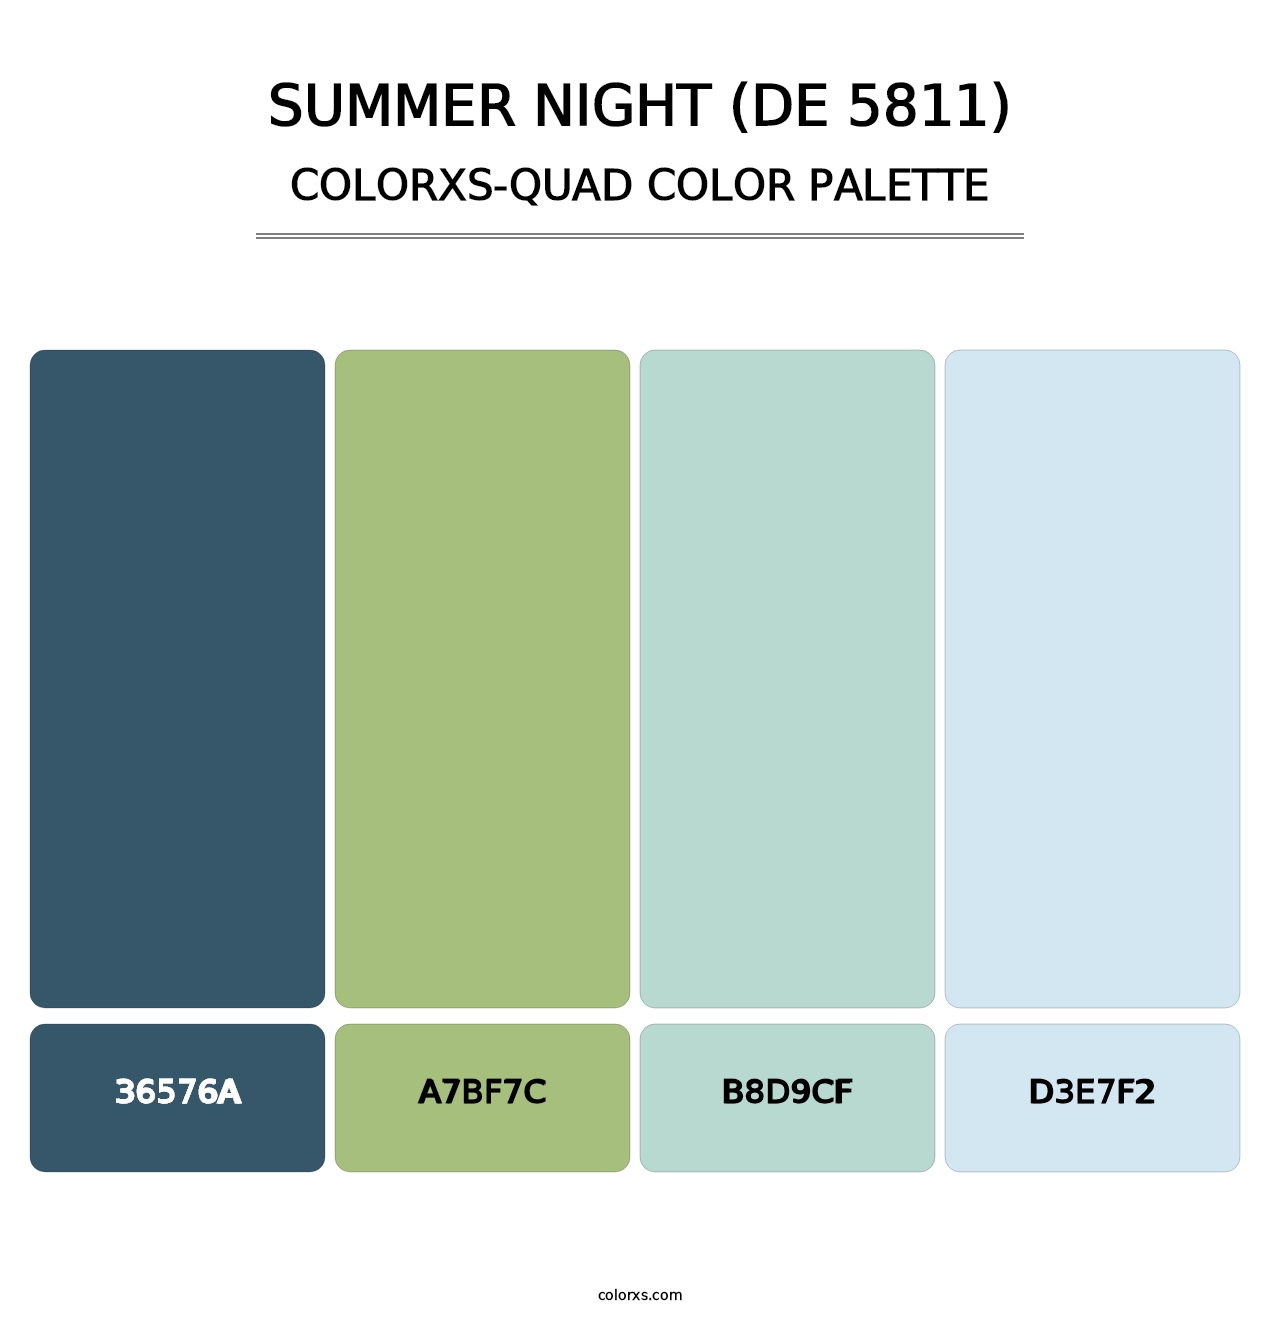 Summer Night (DE 5811) - Colorxs Quad Palette